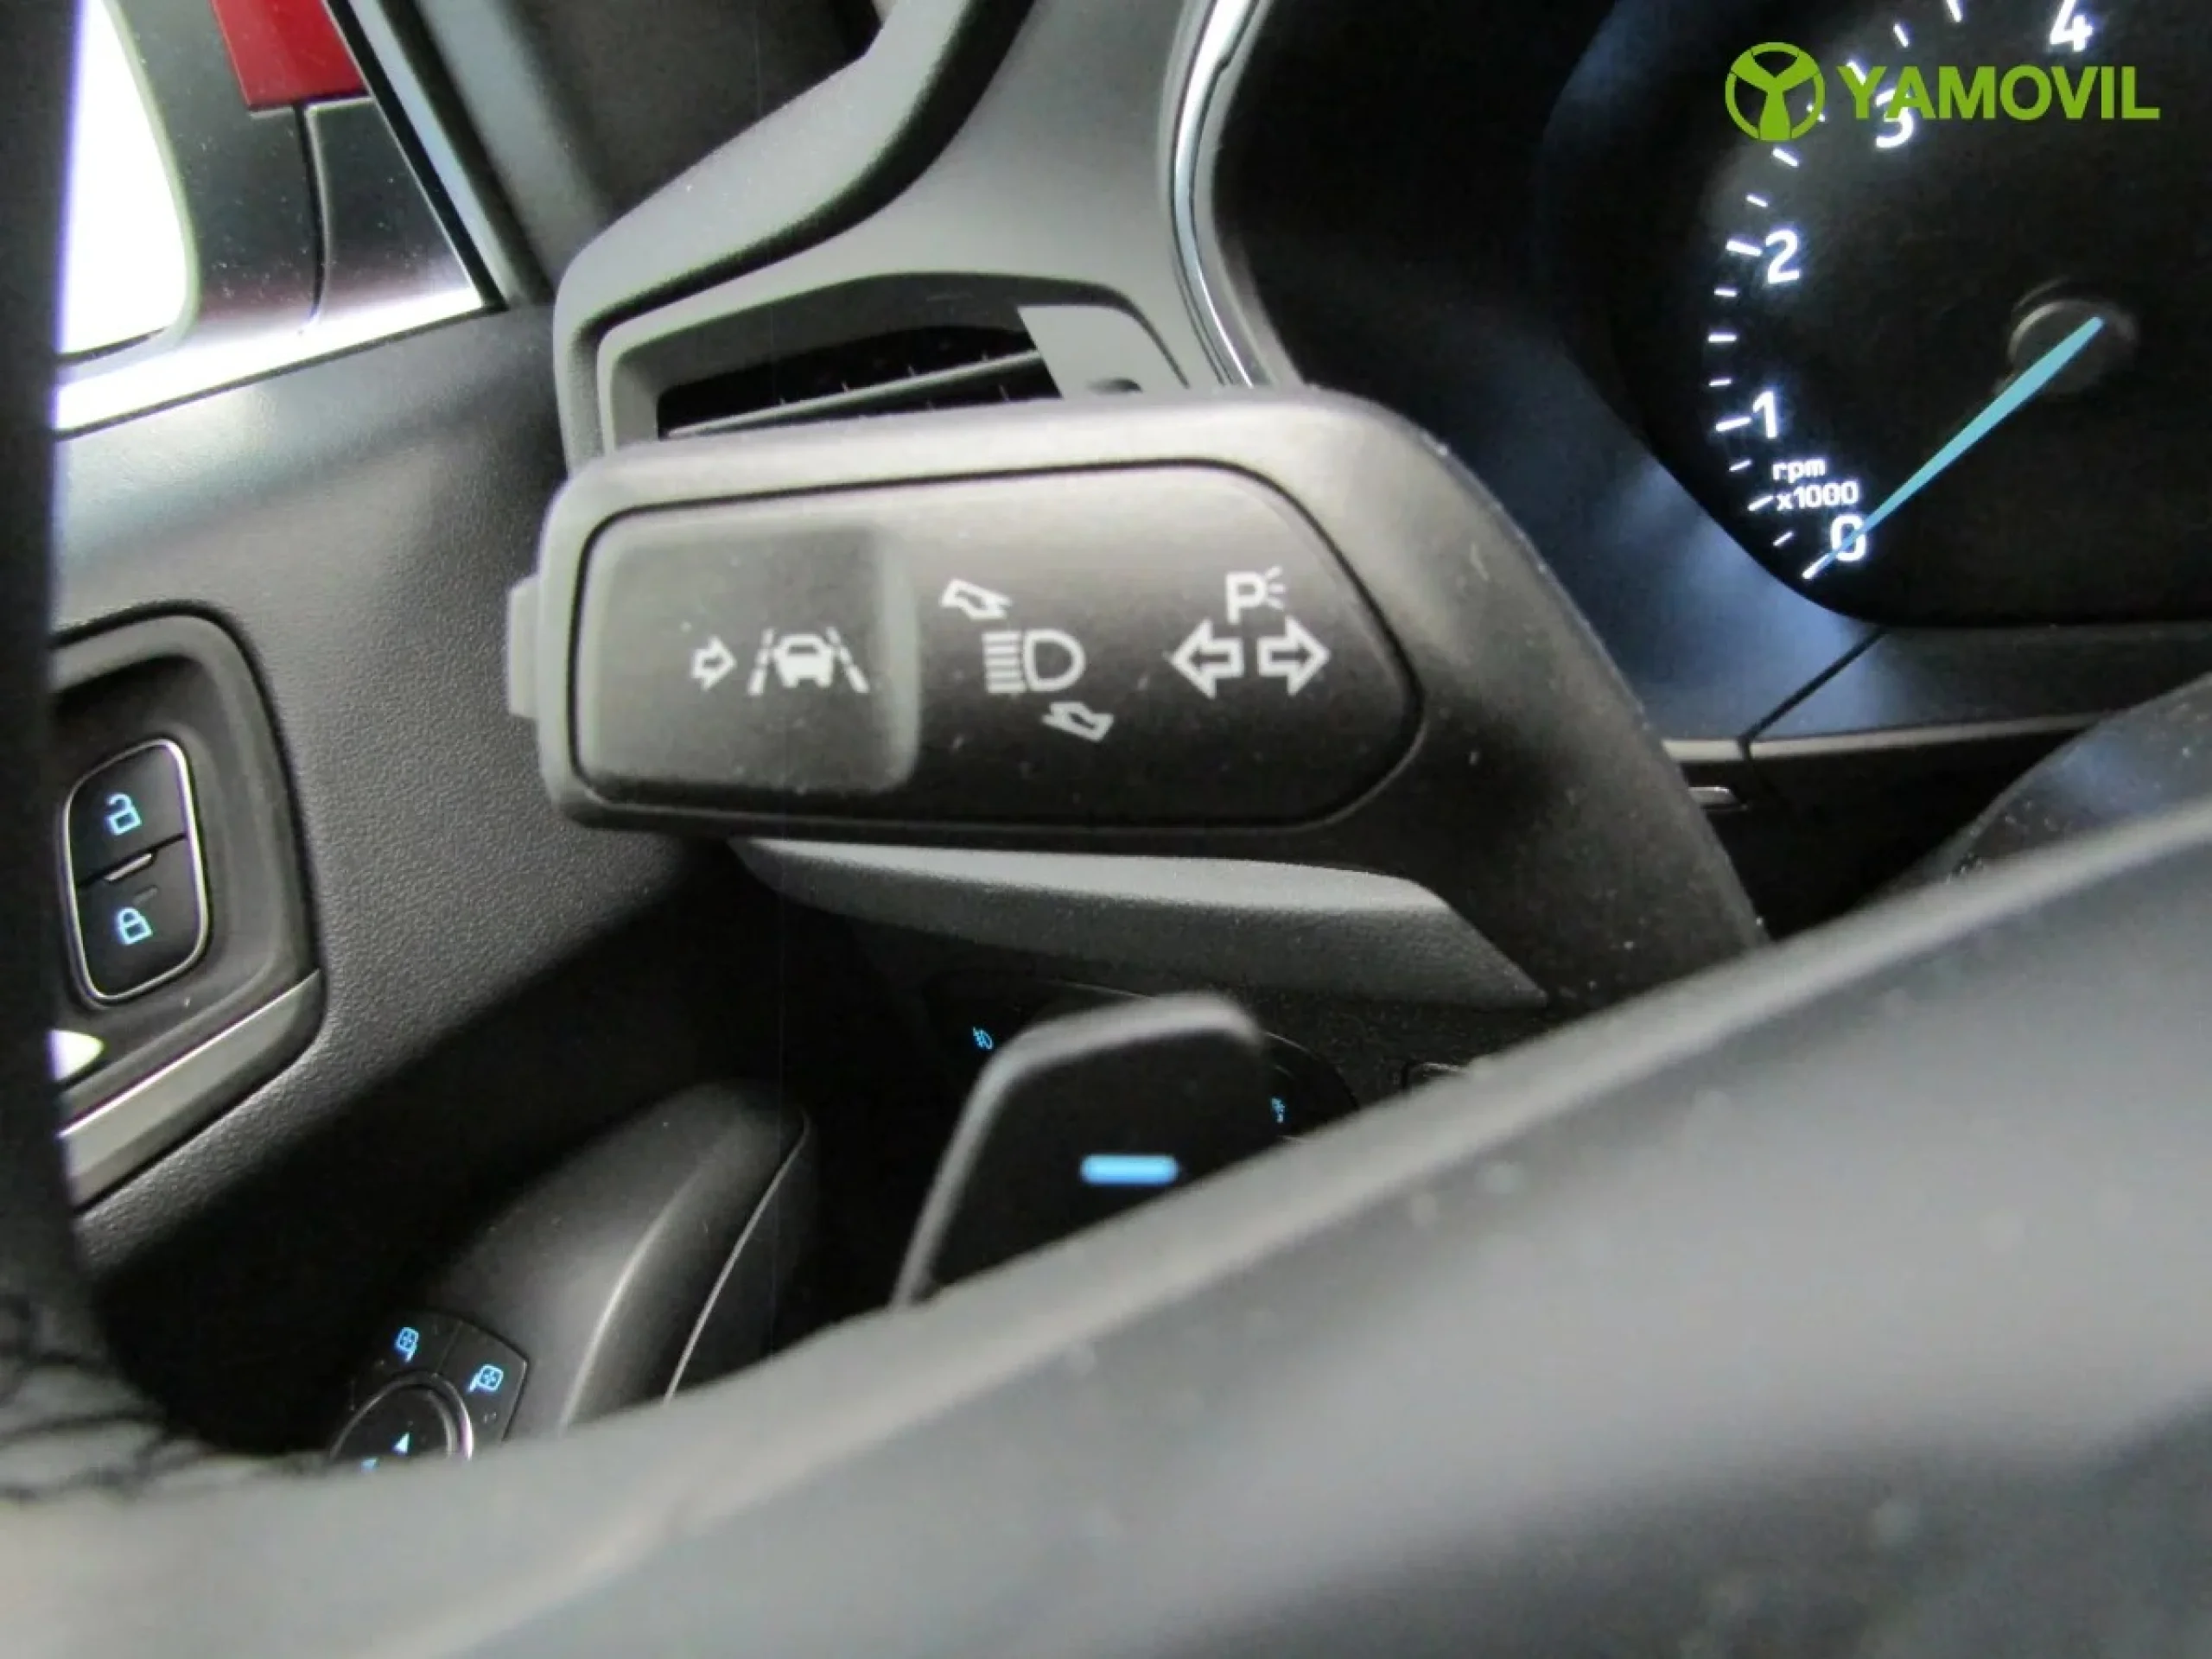 Ford Focus 1.0 Ecoboost Titanium Powershift 92 kW (125 CV) - Foto 23